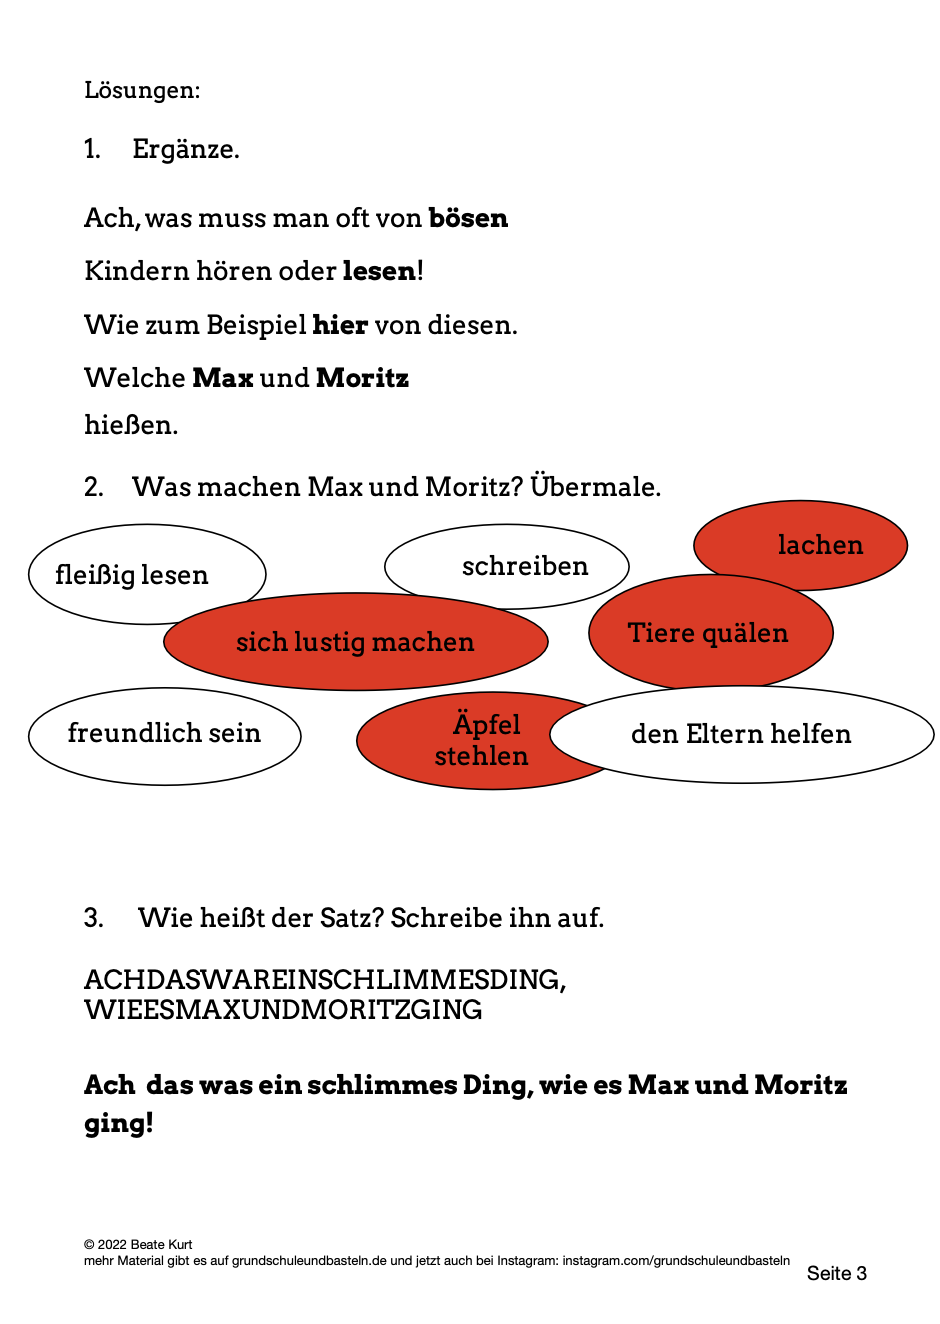  Lösungen zum Arbeitsmaterial zum Buch Max und Moritz 